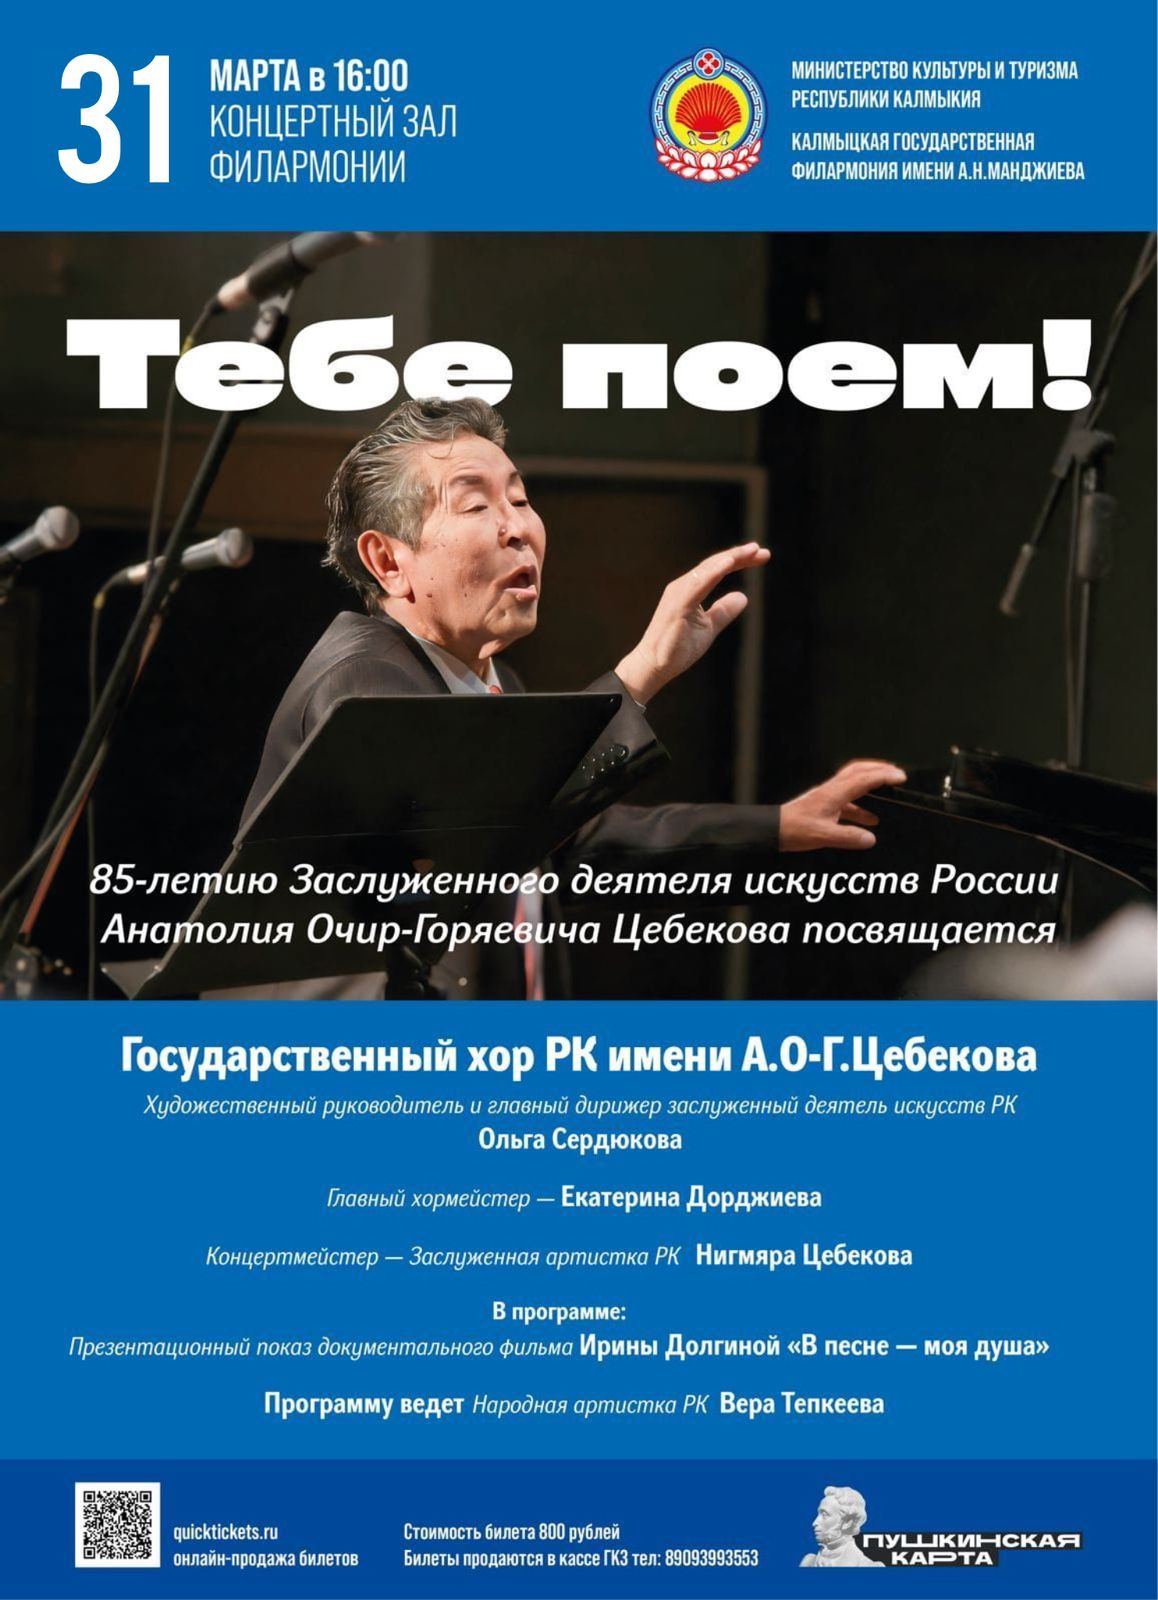 Концерт Государственного хора Республики Калмыкия имени А.О.-Г.Цебекова «Тебе поем!»